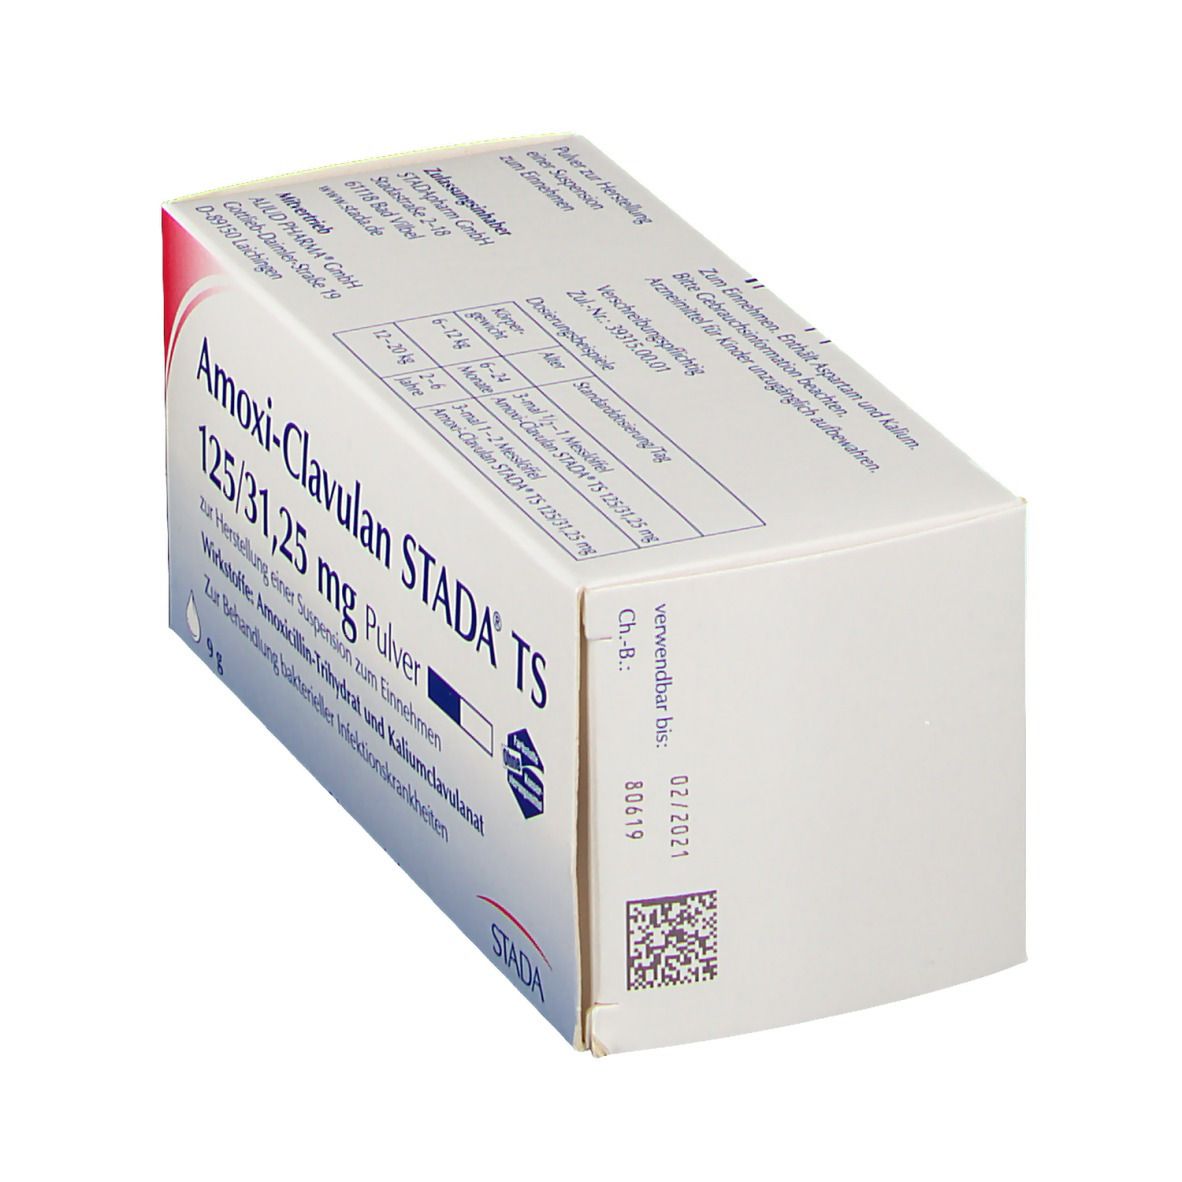 Amoxi-Clavulan STADA® TS 125/31,25 mg Pulver